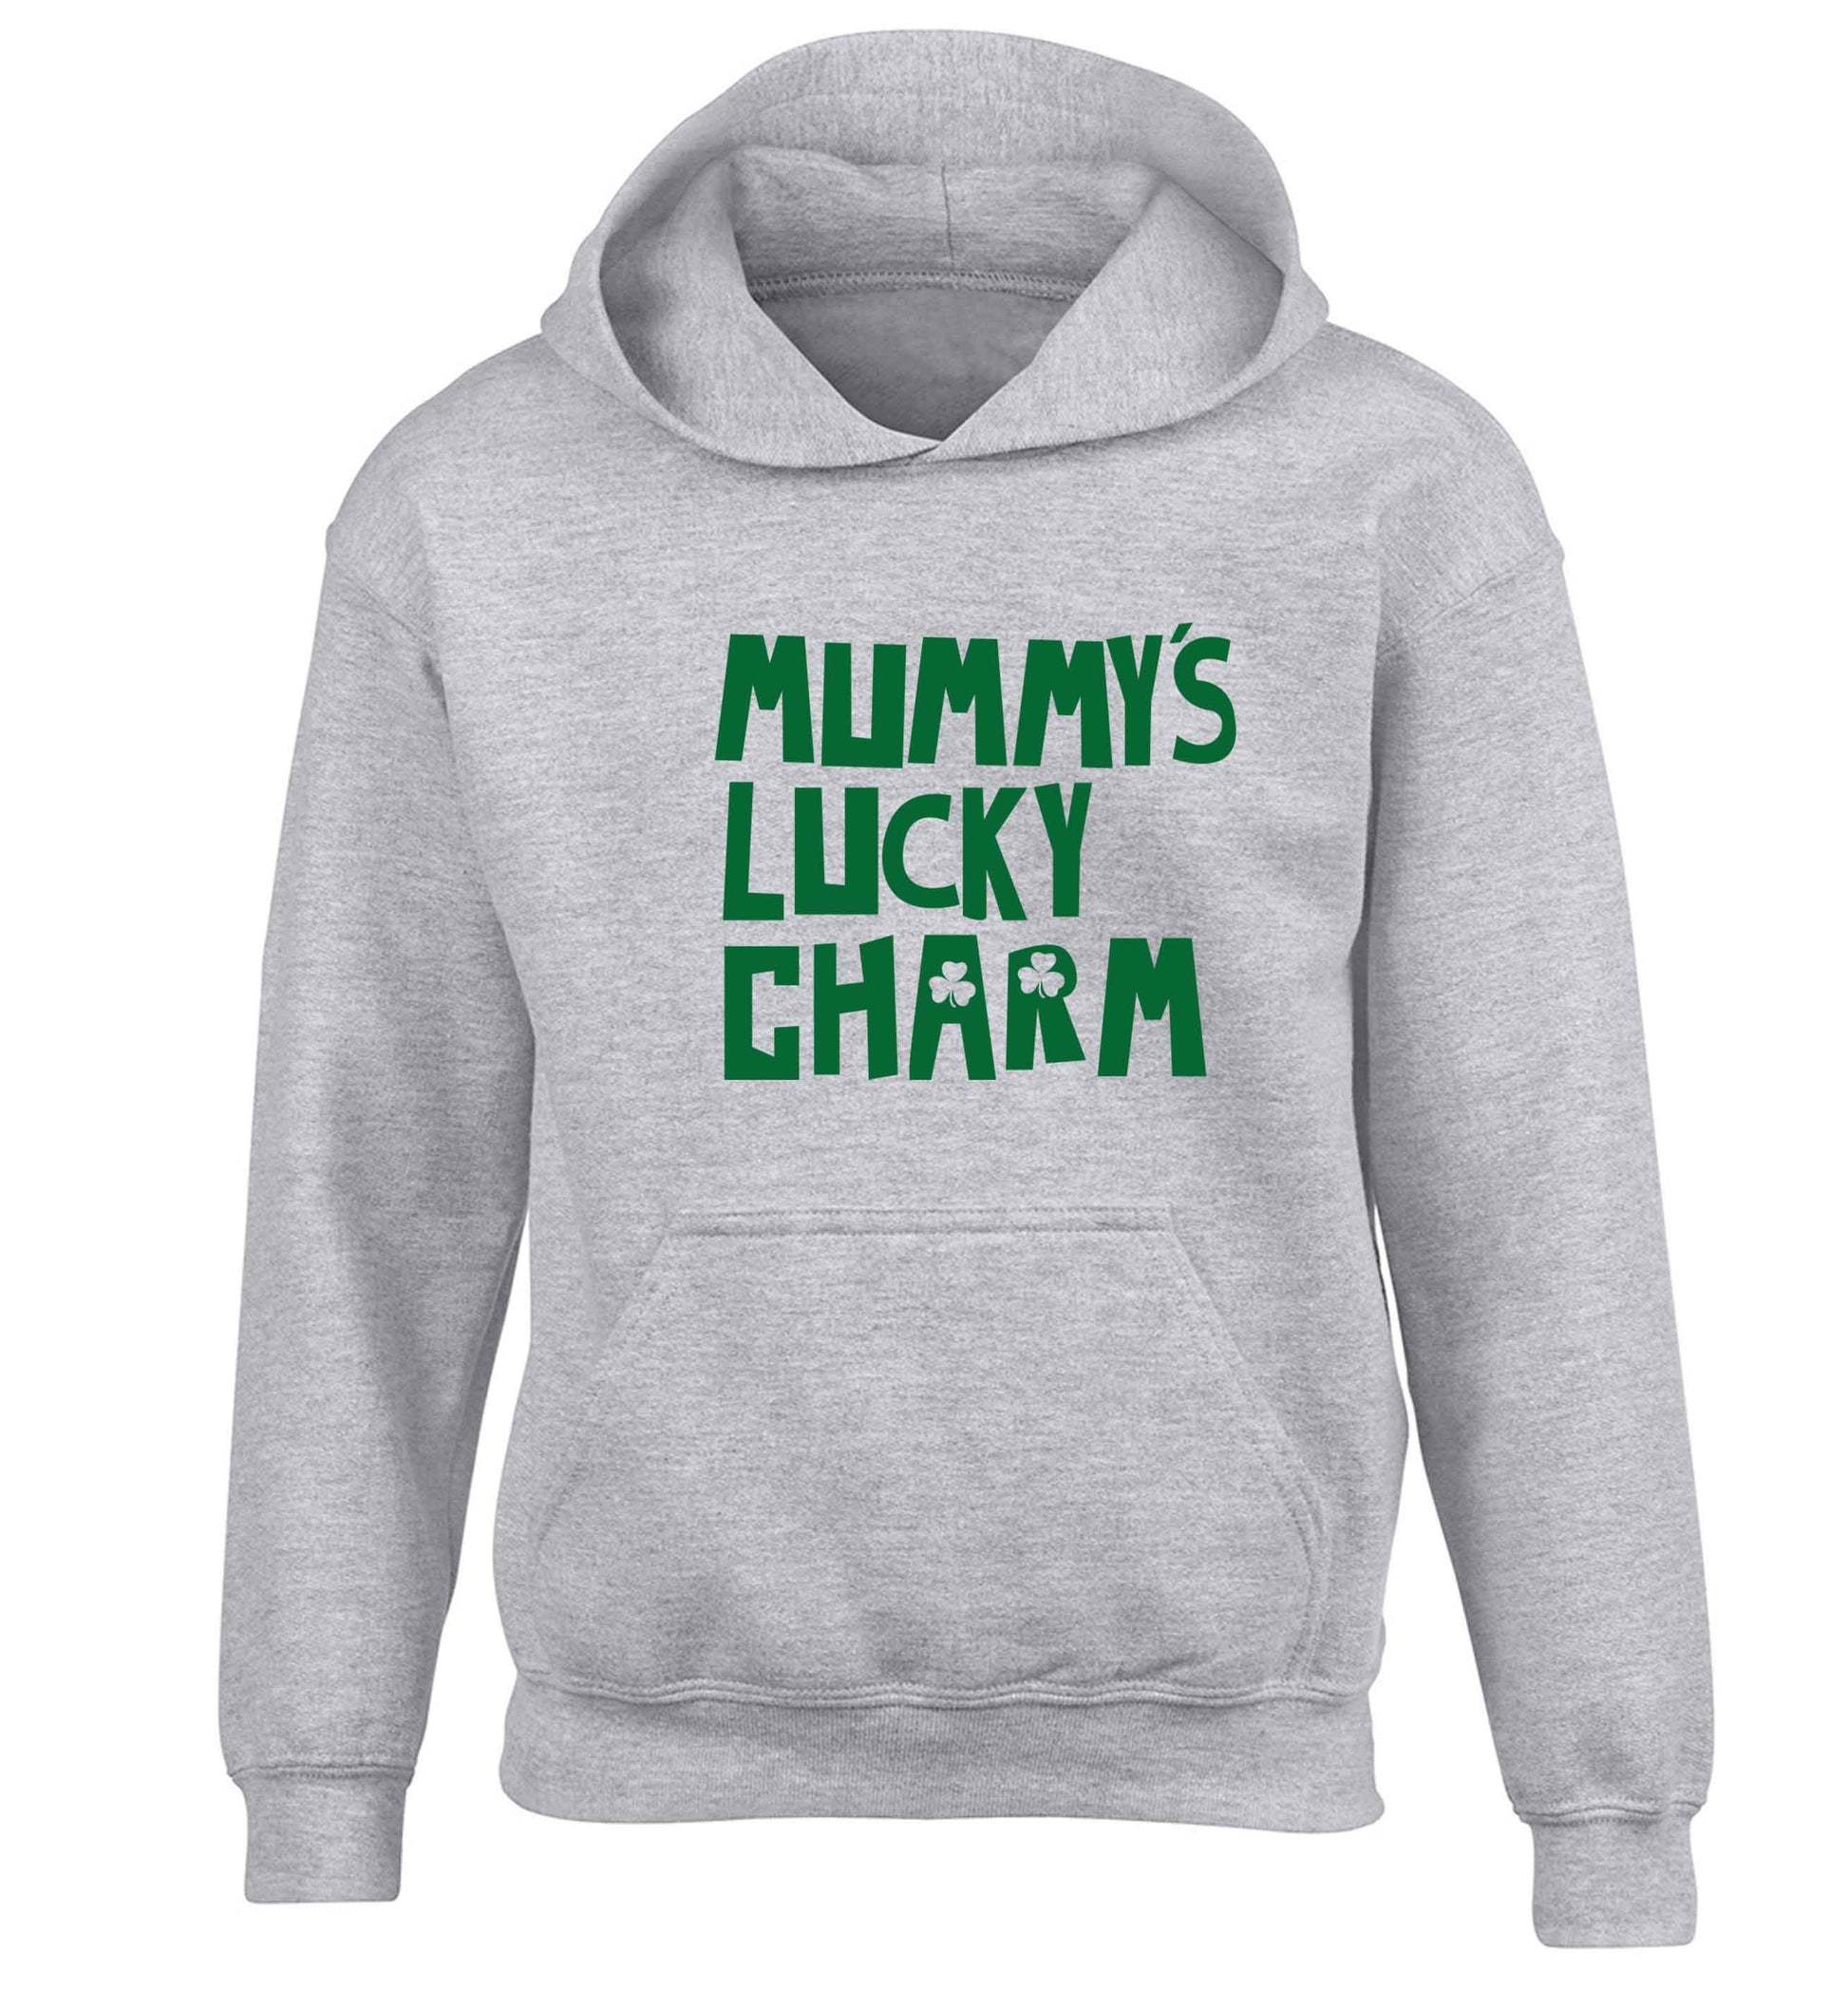 Mummy's lucky charm children's grey hoodie 12-13 Years